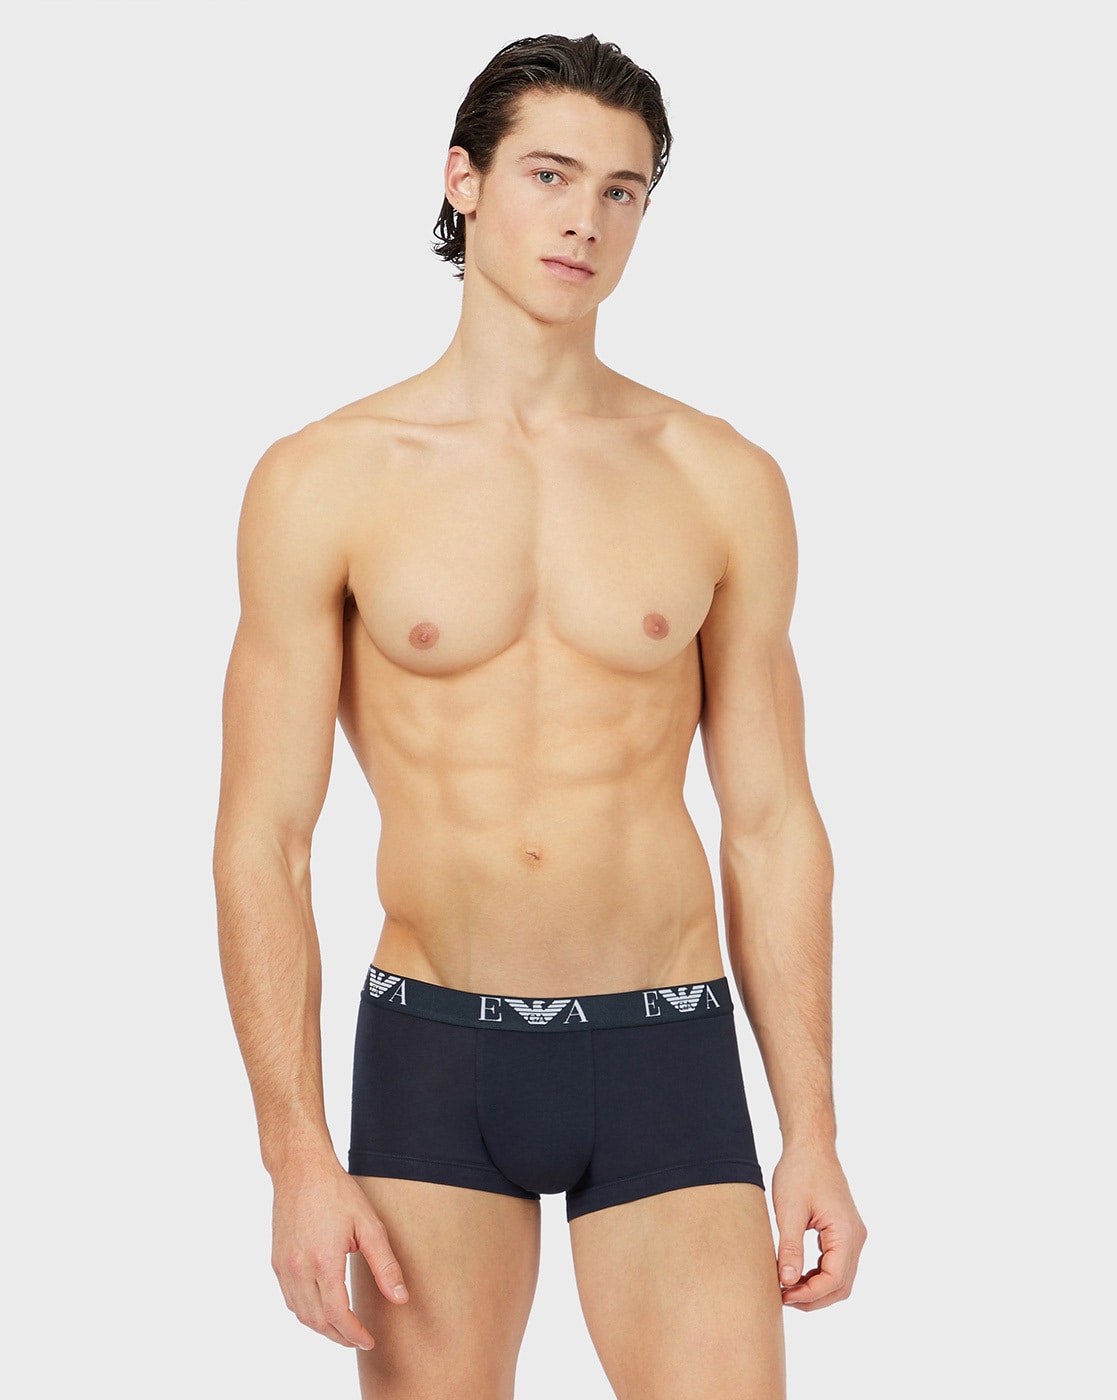 Marine ARMANI EMPORIO ARMANI Mens Underwear 3Pkt Boxers 